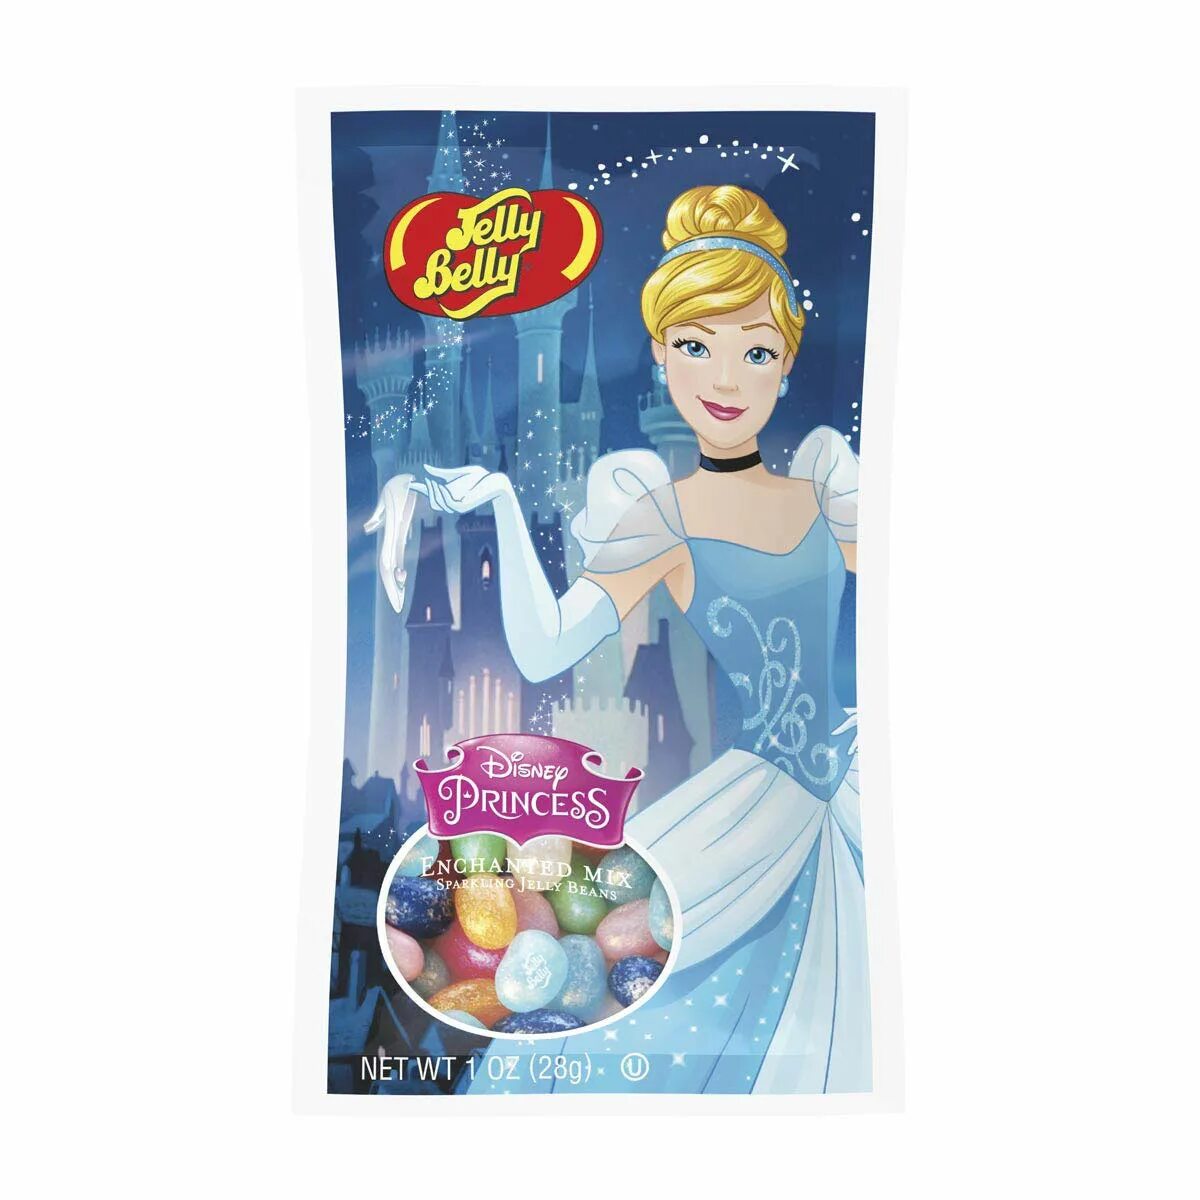 Принцессы 28. Jelly belly Disney Princess. Джелли Белли жевательные конфеты 28гр 10 вкусов (30).